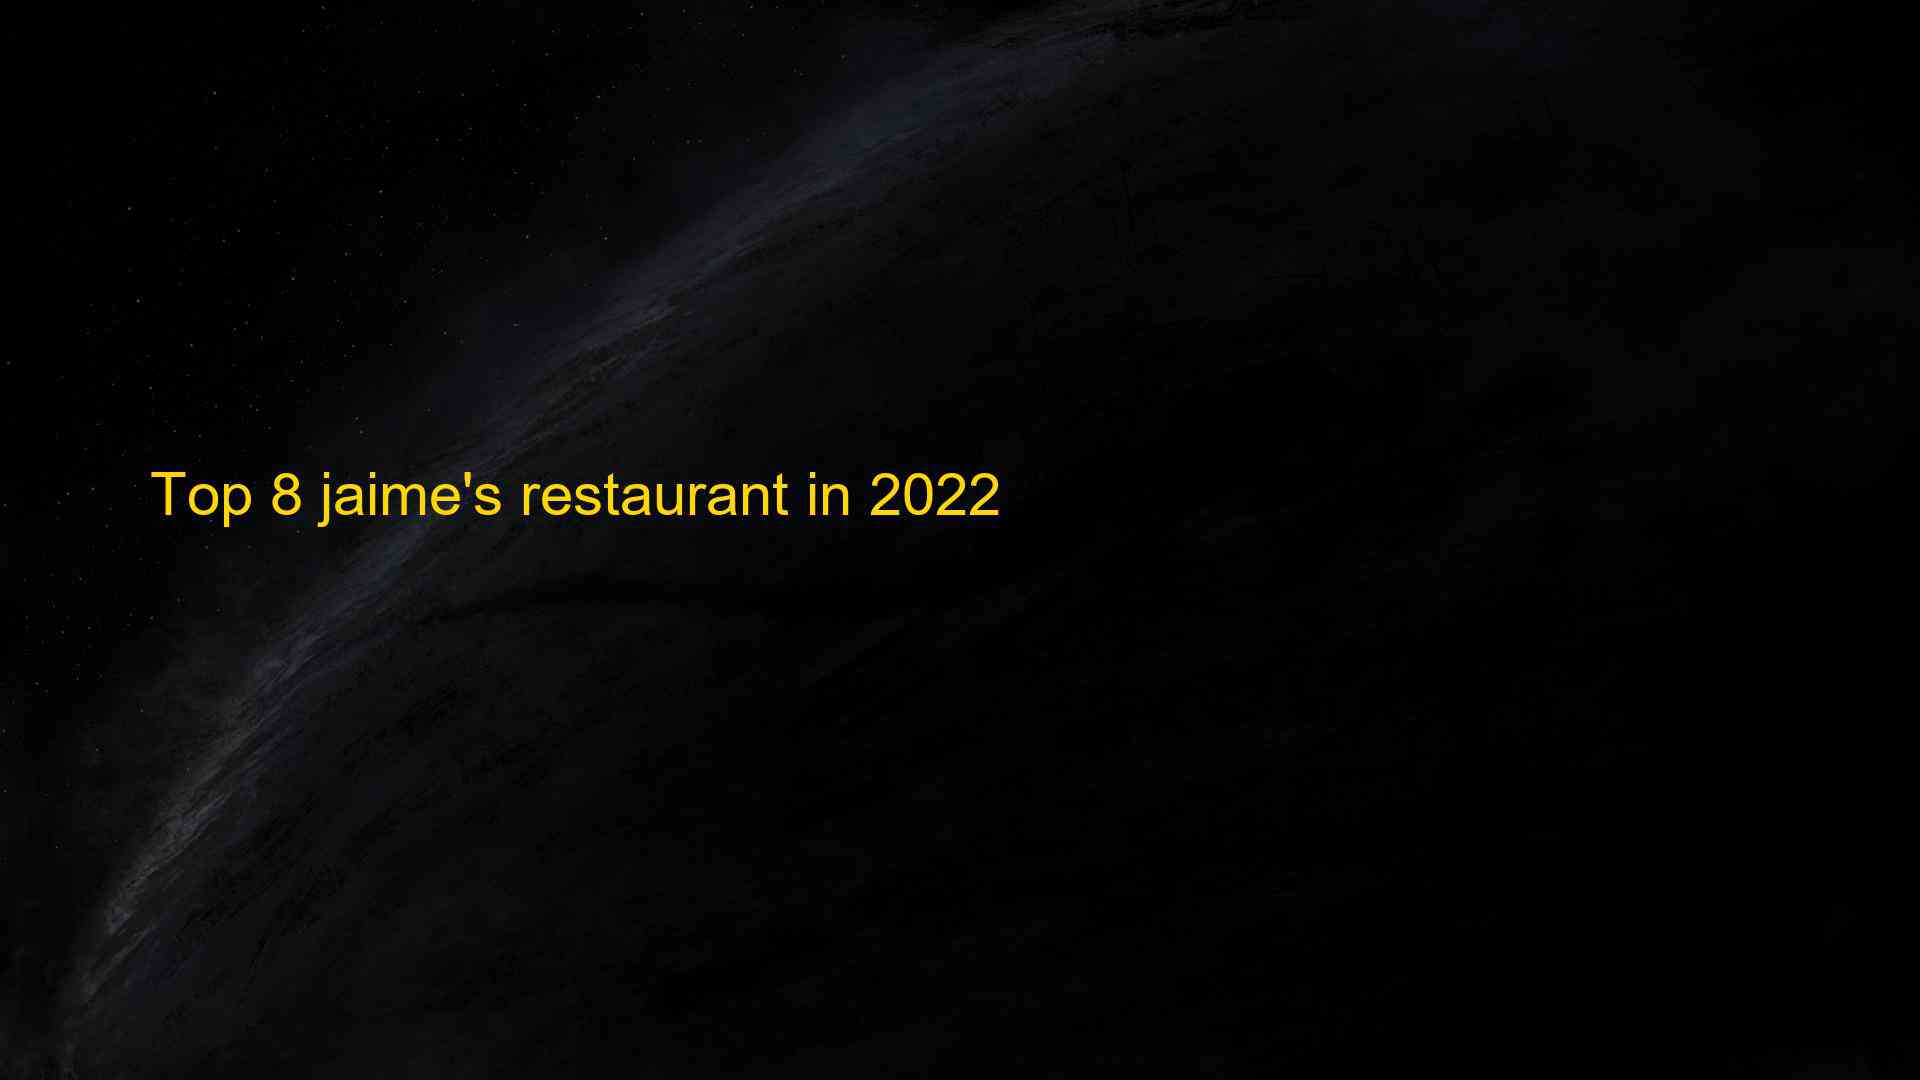 Top 8 jaimes restaurant in 2022 1663175883